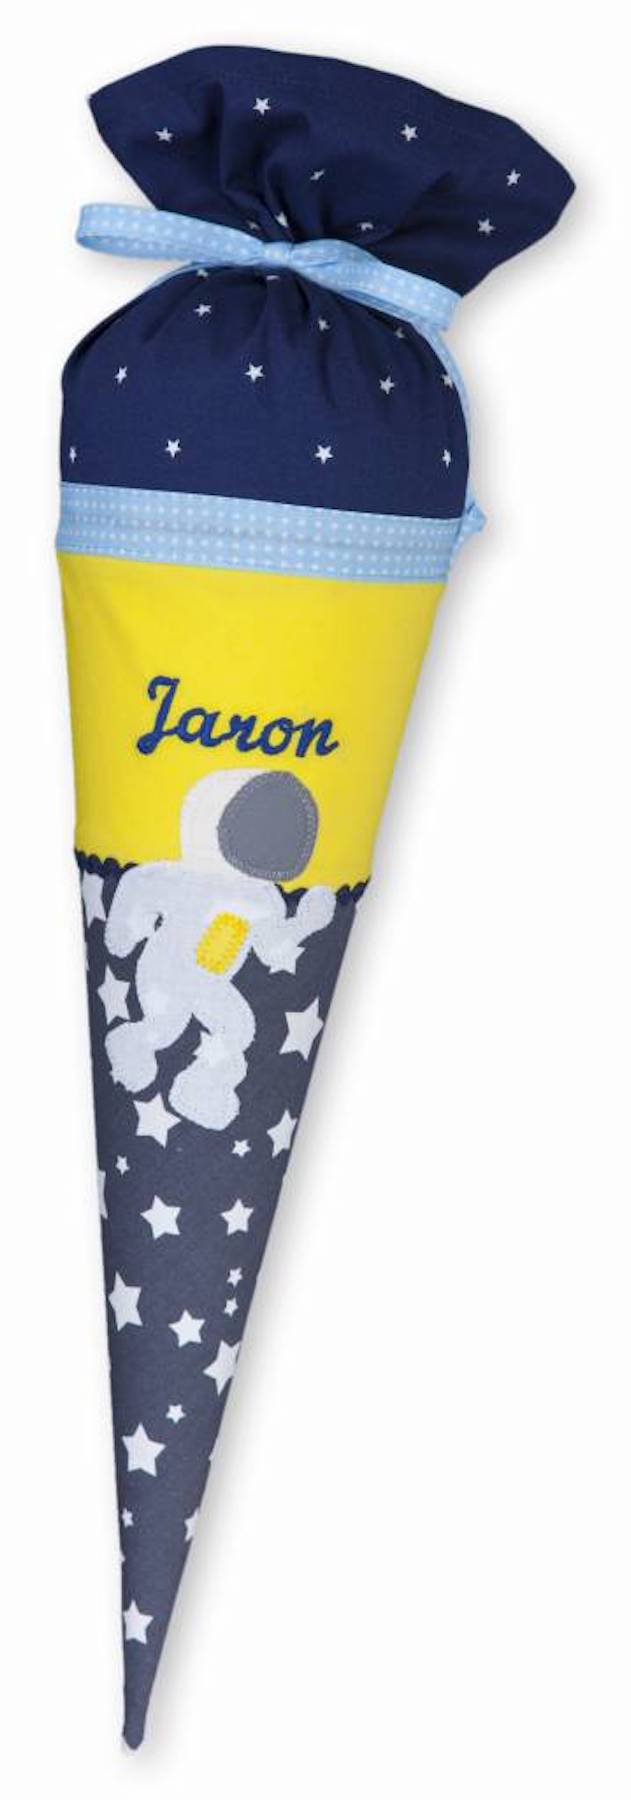 Geschwisterschultüte mit Namen - Astronaut Jaron